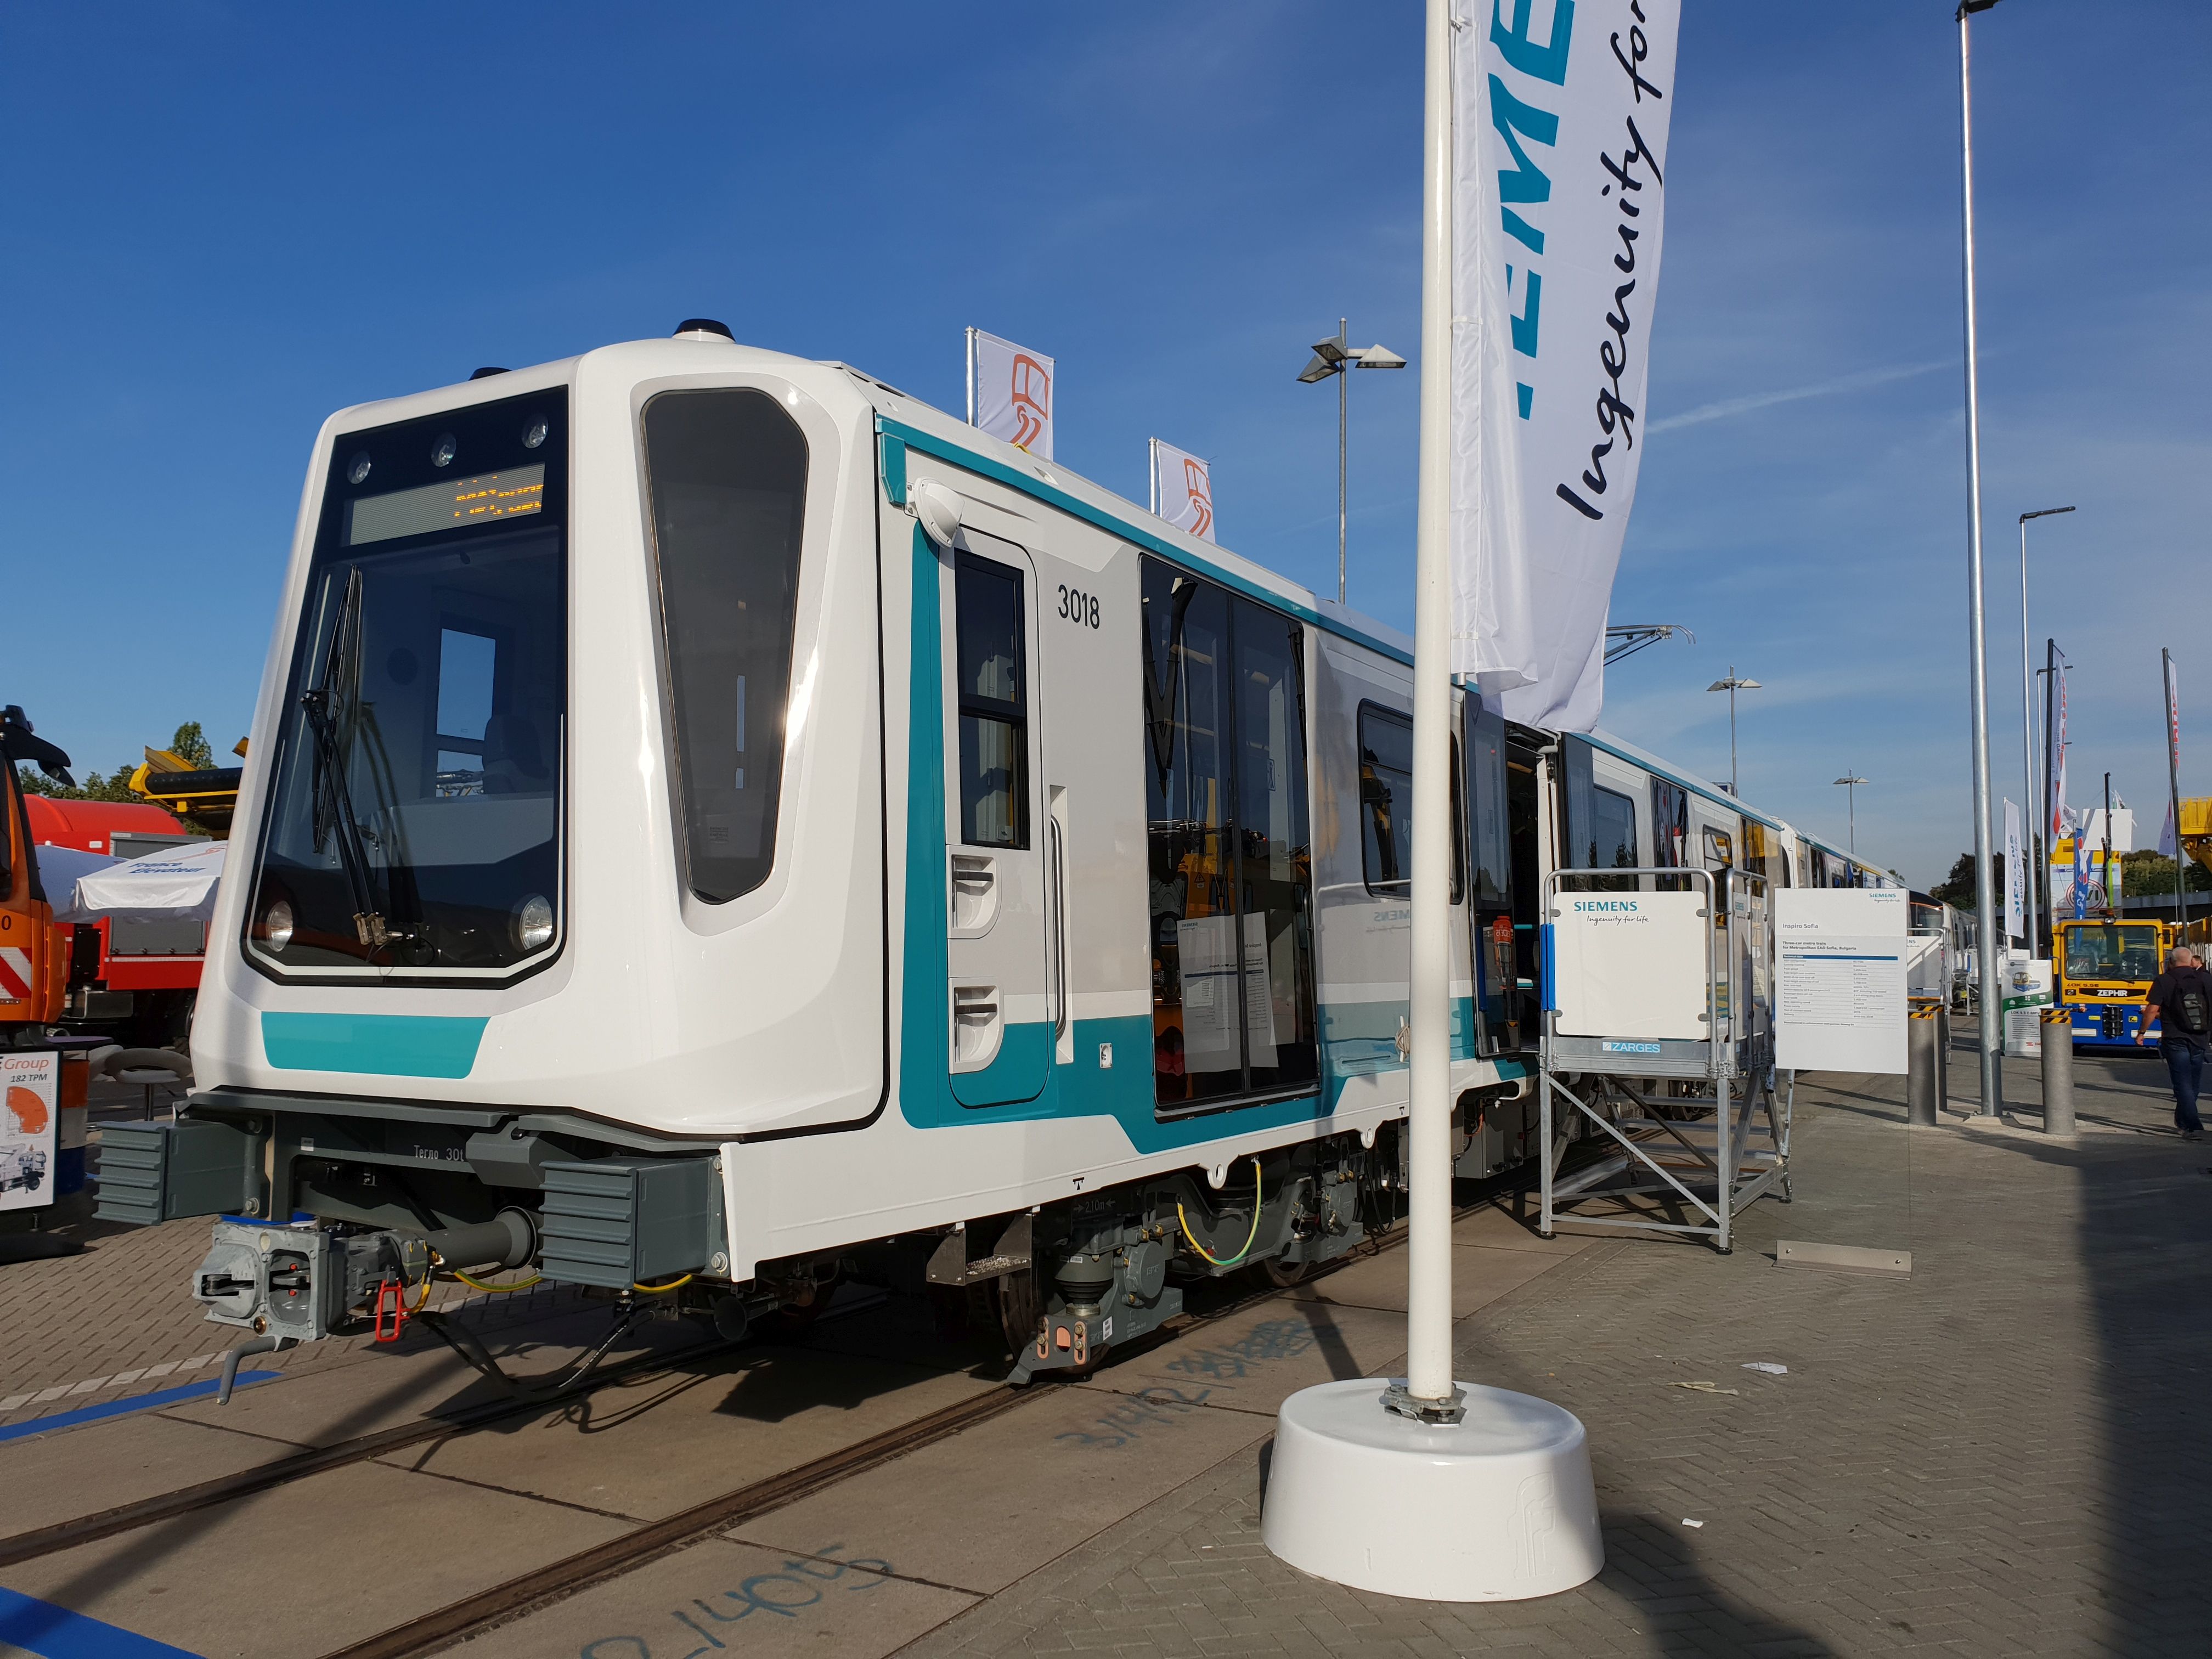 Foto: Siemens U-Bahn Inspiro für Sofia auf der Berliner Innotrans 2018